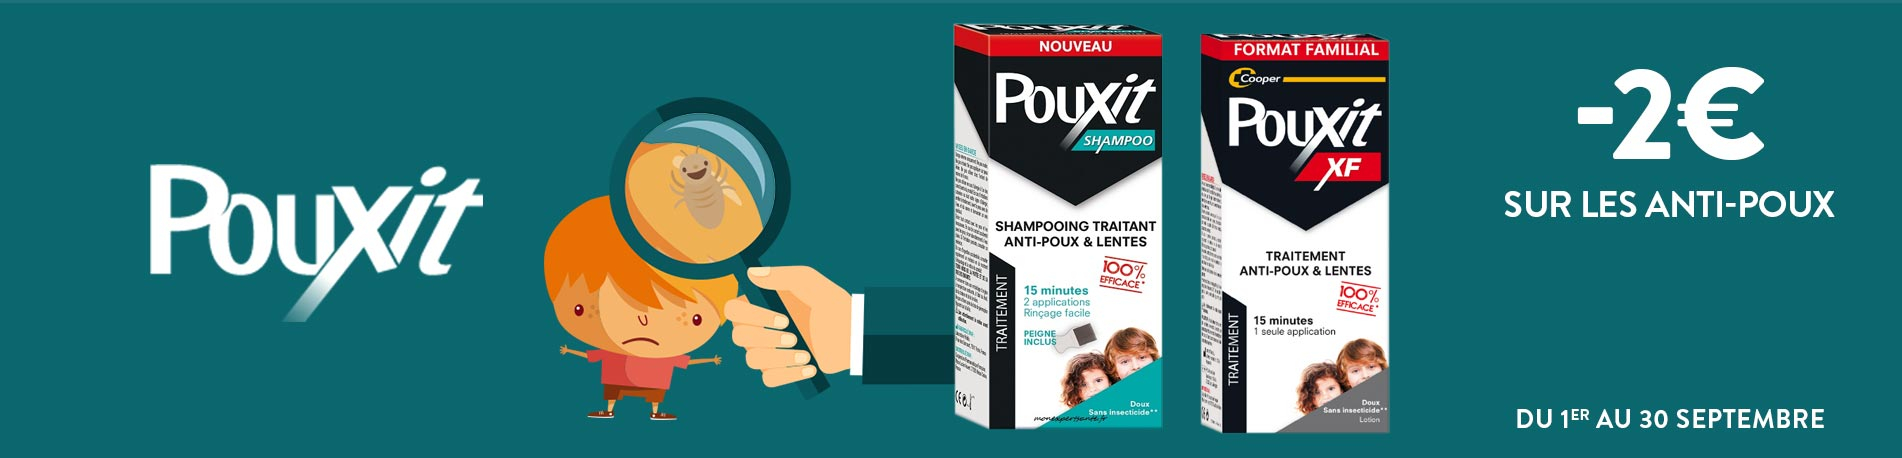 Promotion Pouxit anti-poux